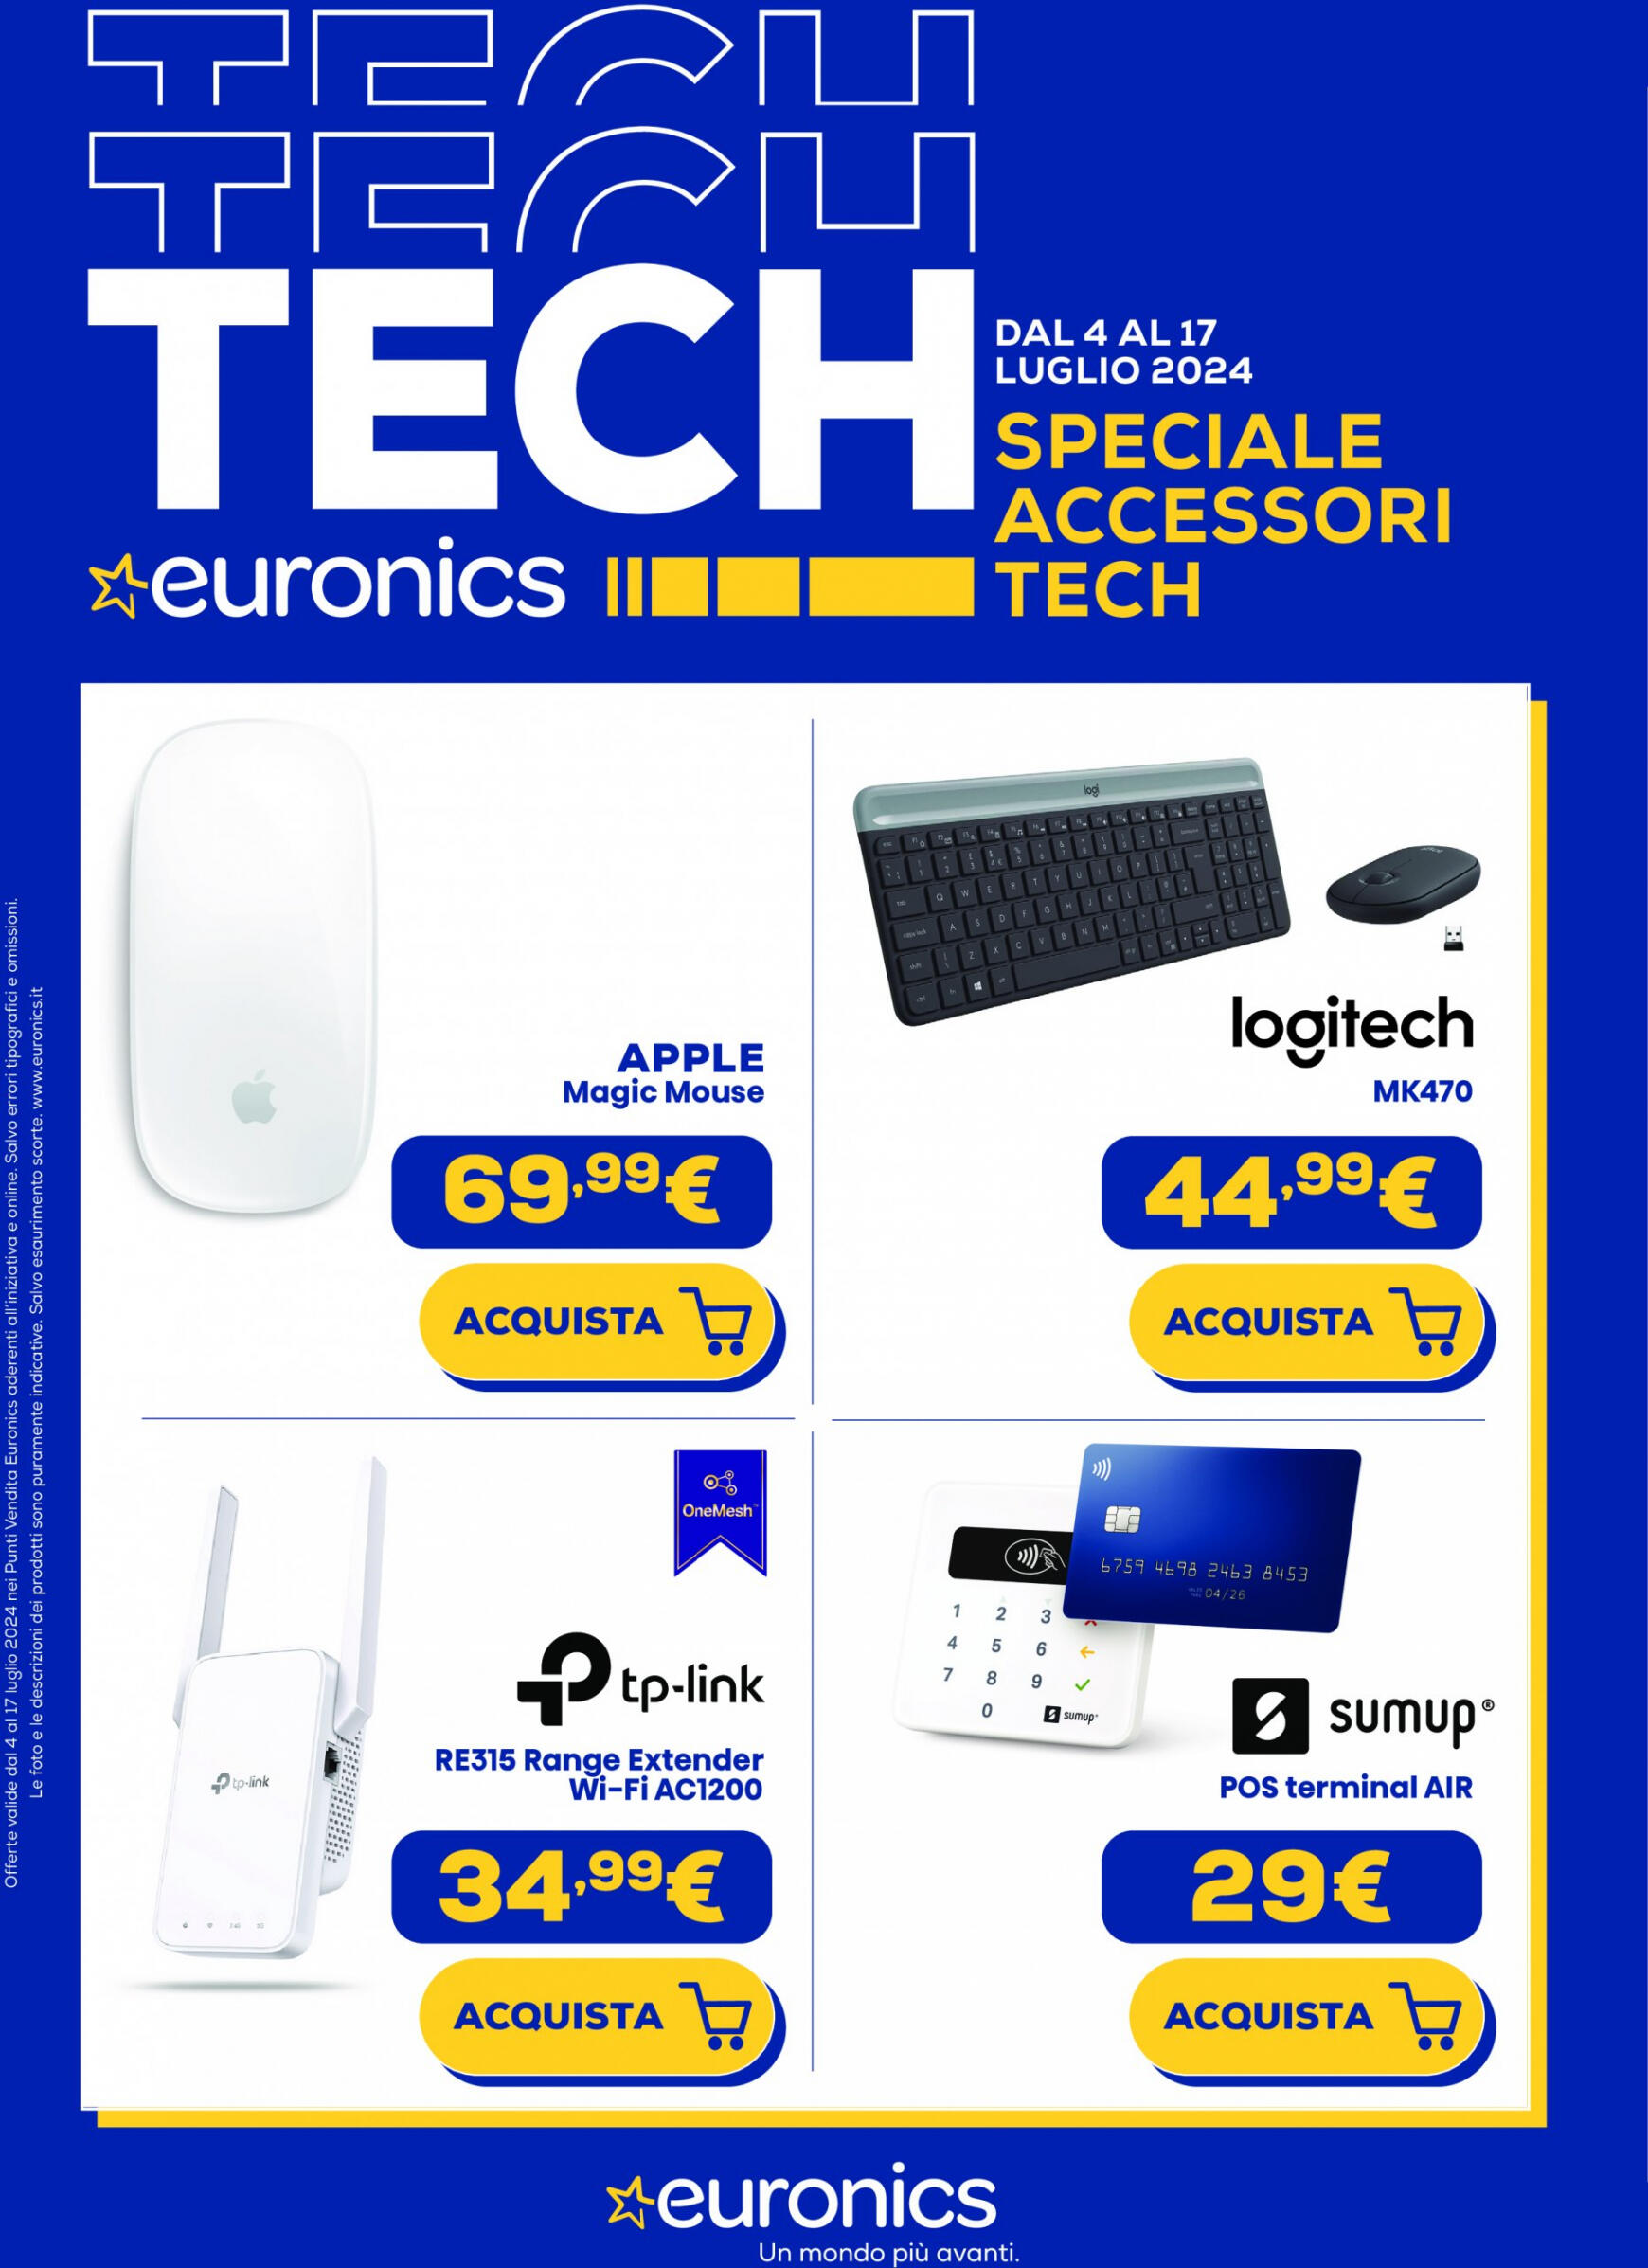 euronics - Nuovo volantino Euronics - Speciale Accessori Tech 04.07. - 17.07.